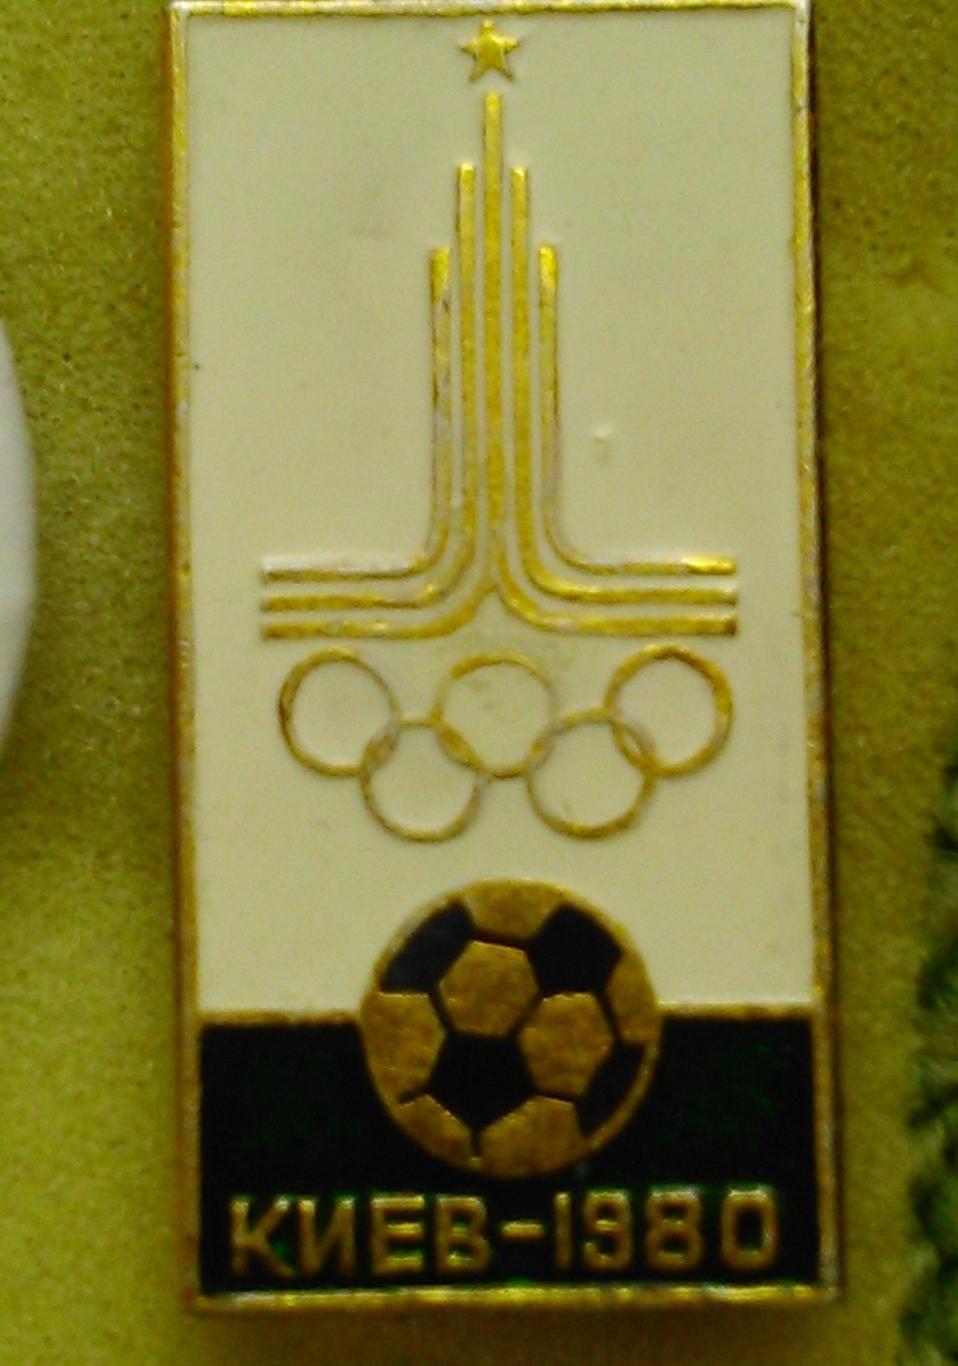 Знак XXII Олимпийские игры Киев 1980. Оптом скидки до 46%!